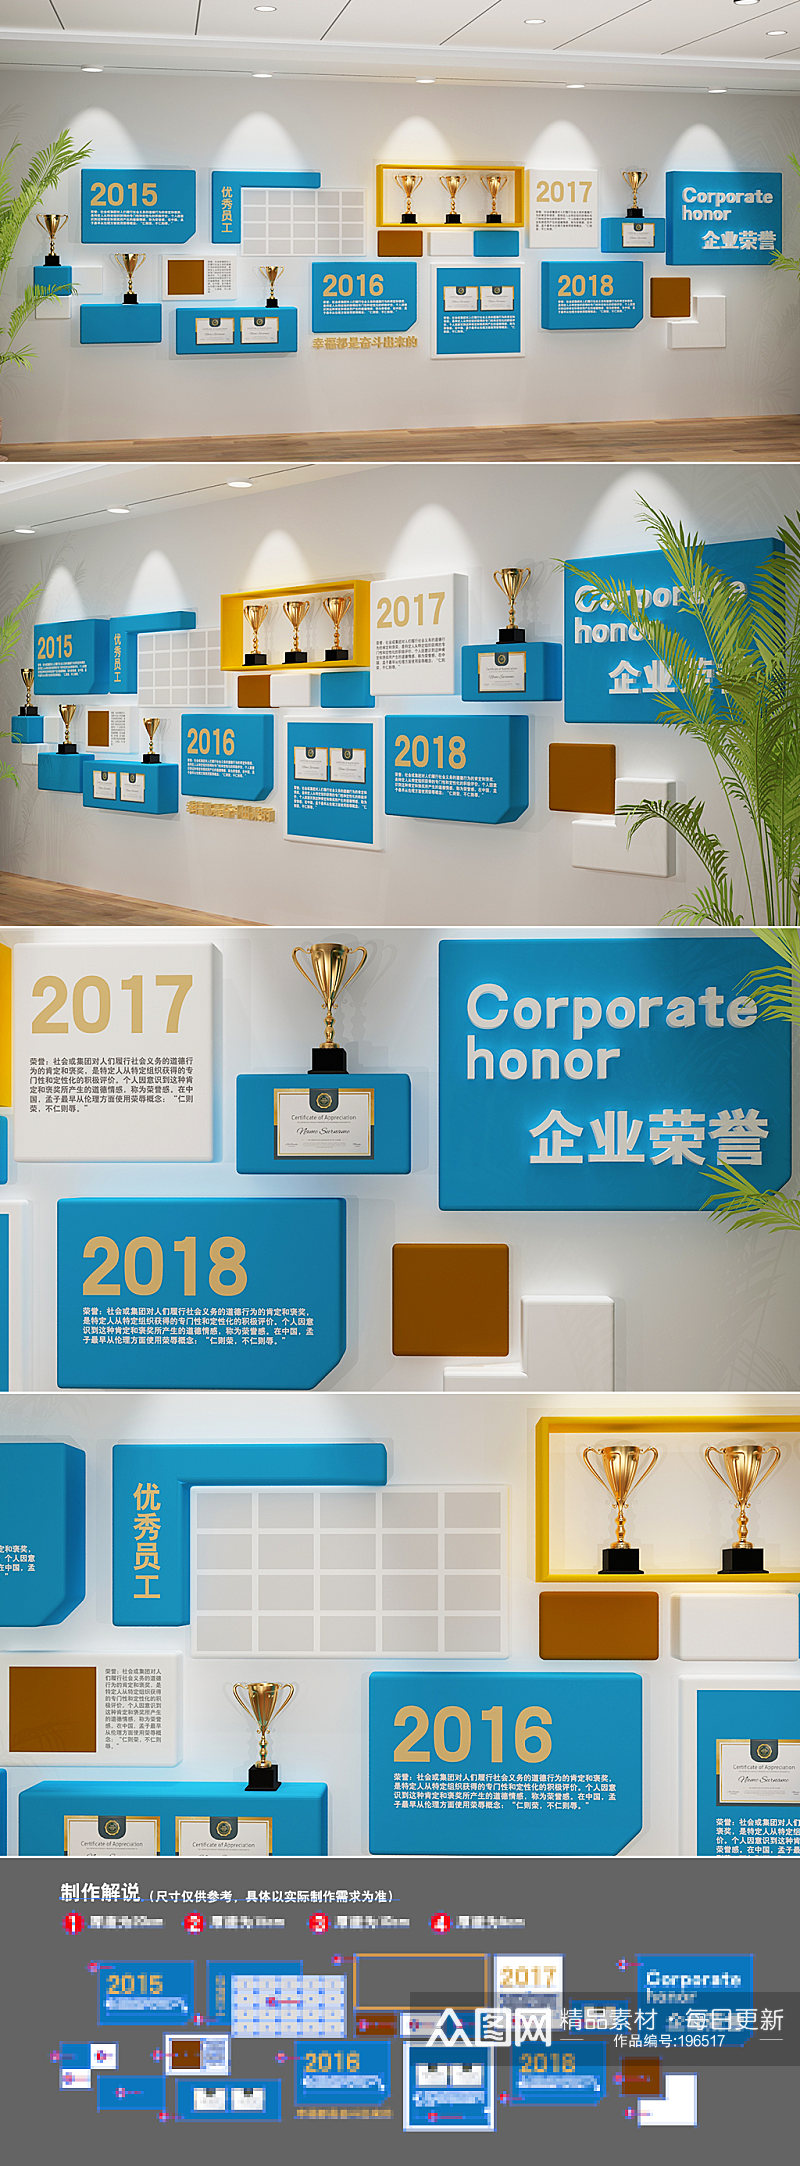 蓝色企业荣誉墙奖项墙公司文化墙素材